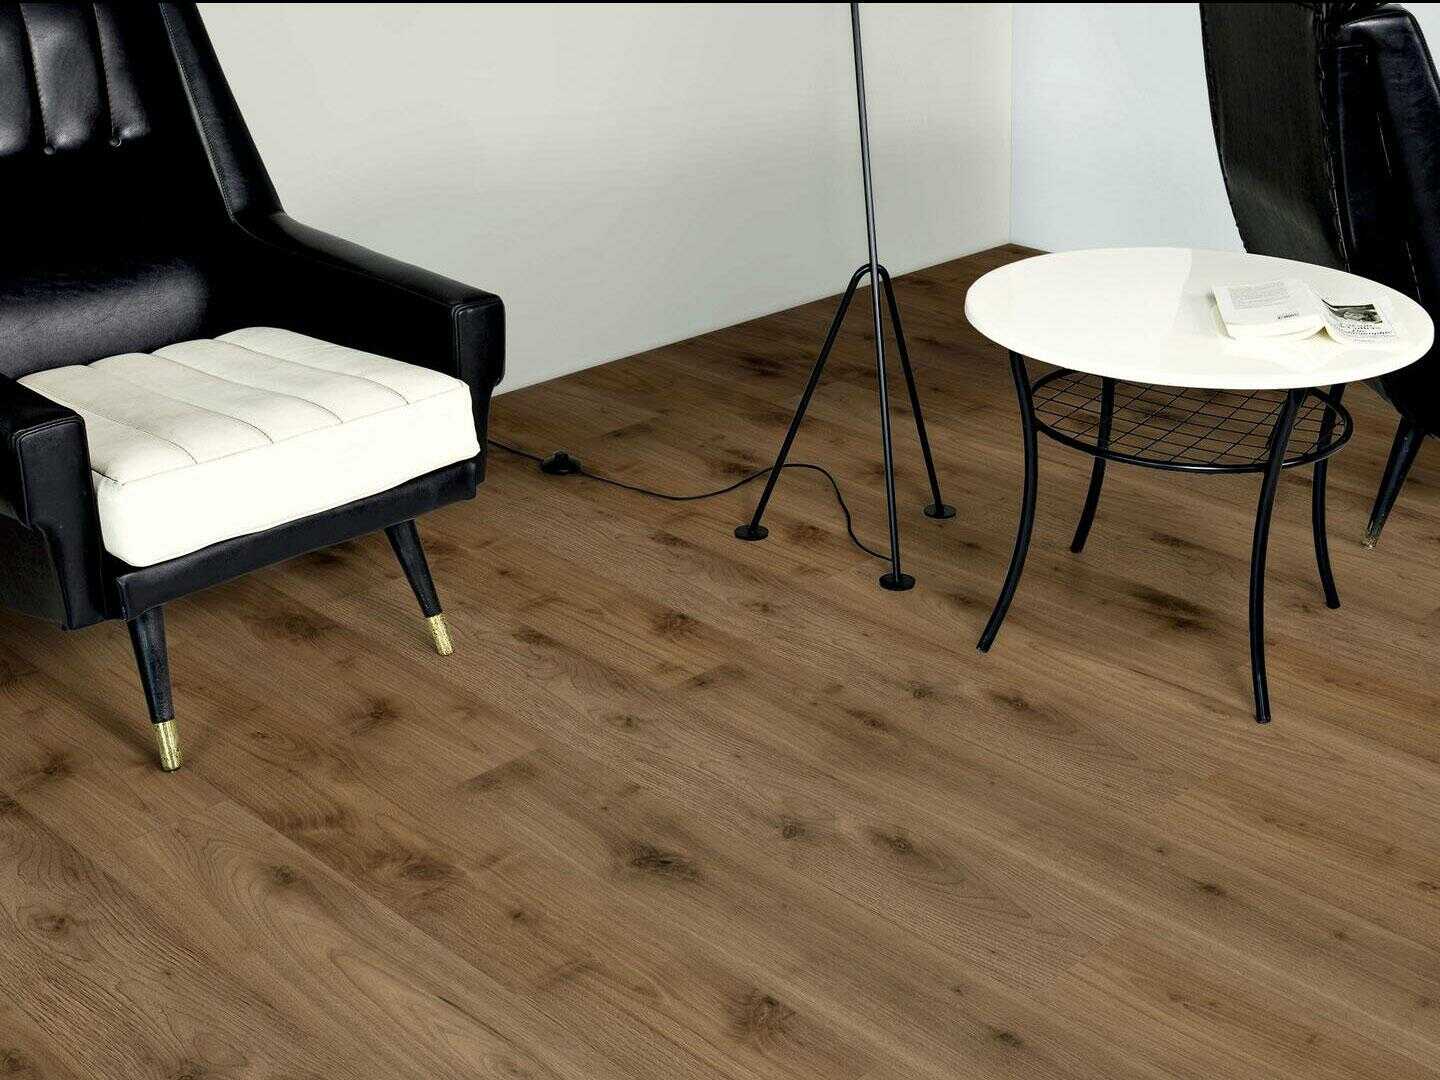 Sàn gỗ kaindl k4376